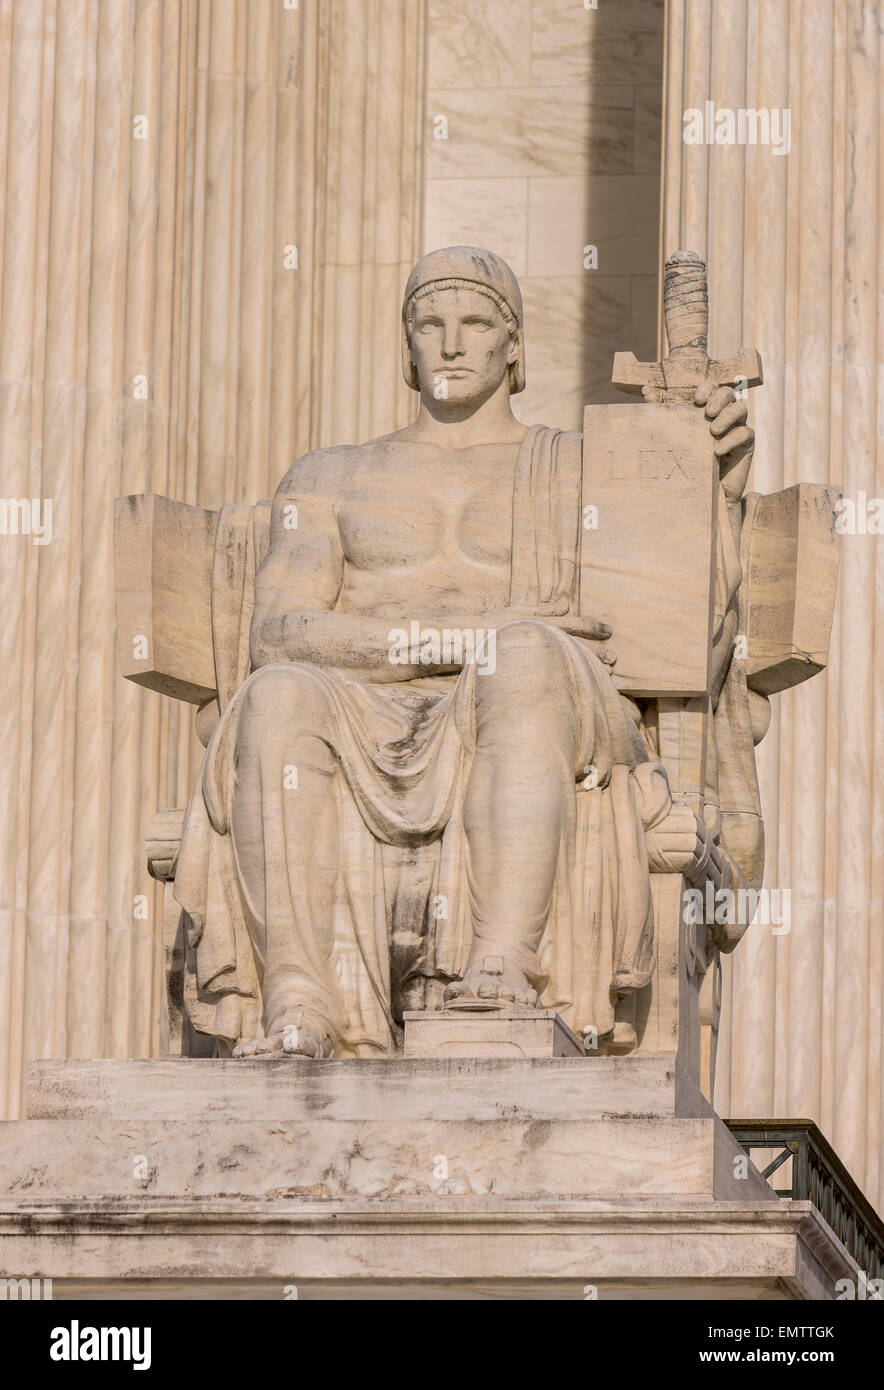 WASHINGTON, DC, Estados Unidos - el Tribunal Supremo de los Estados Unidos la construcción exterior. "Autoridad de Derecho" escultura de James Earle Fraser. Foto de stock